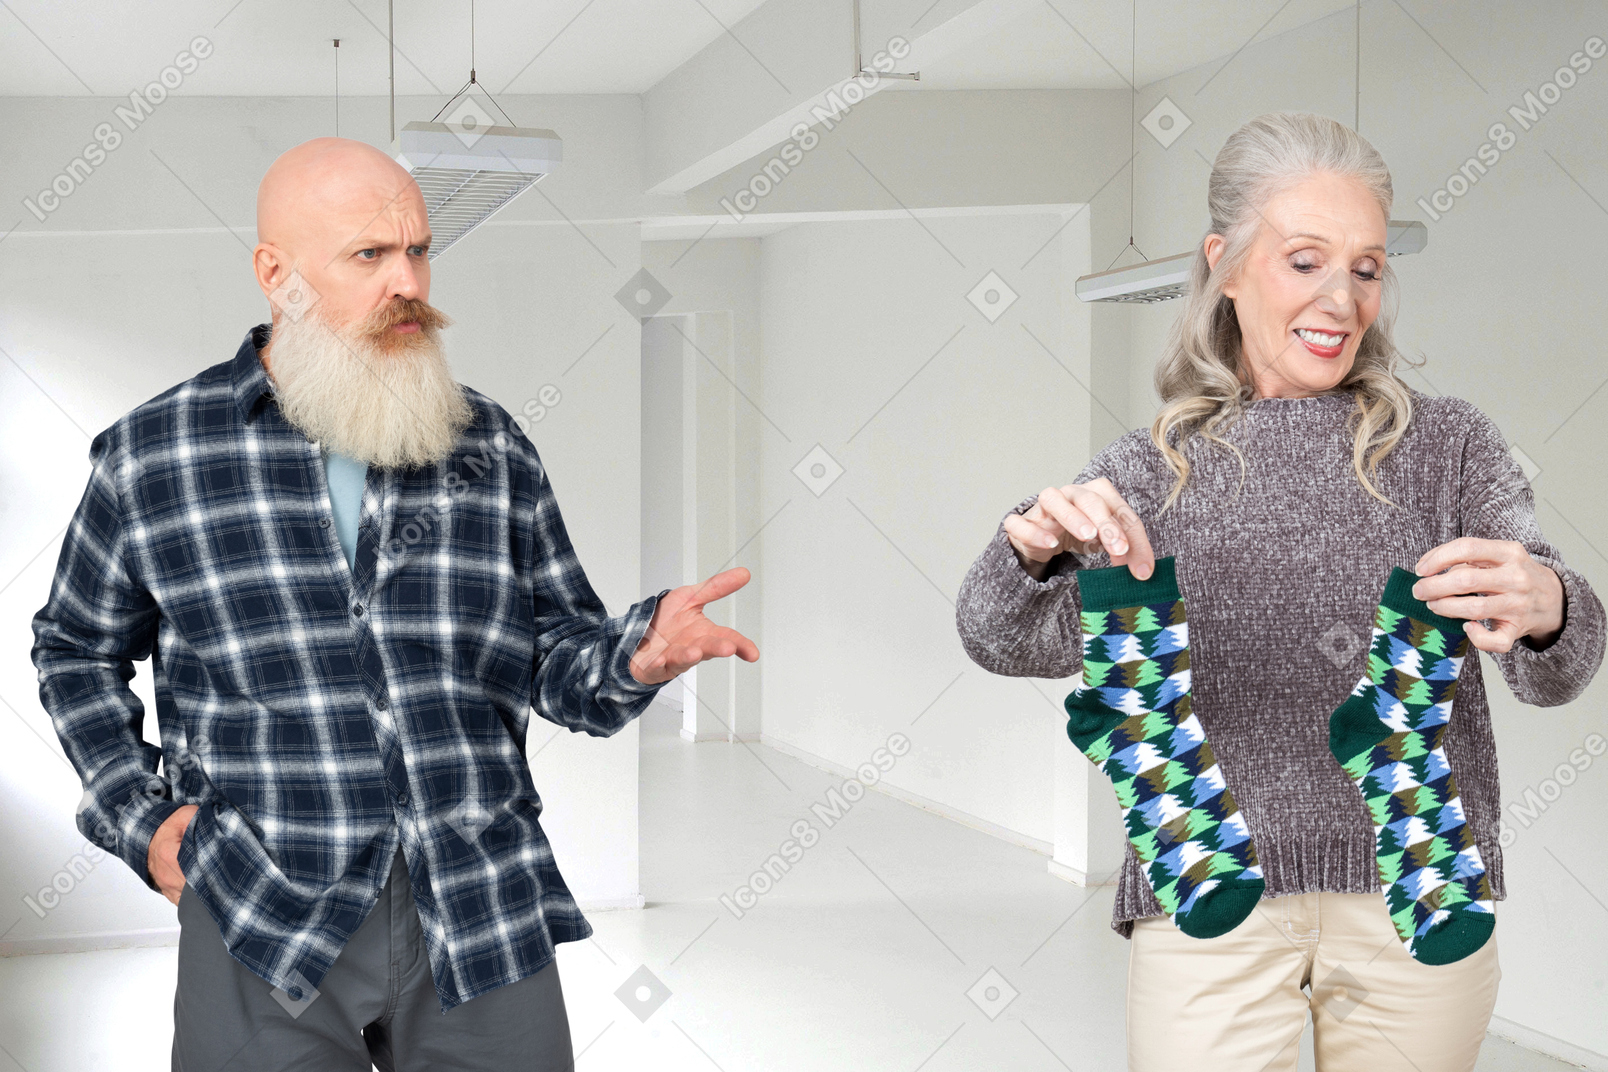 Un vieil homme chauve avec une barbe grise à la recherche d'une vieille dame avec étonnement alors qu'elle tient deux chaussettes vertes dans ses mains